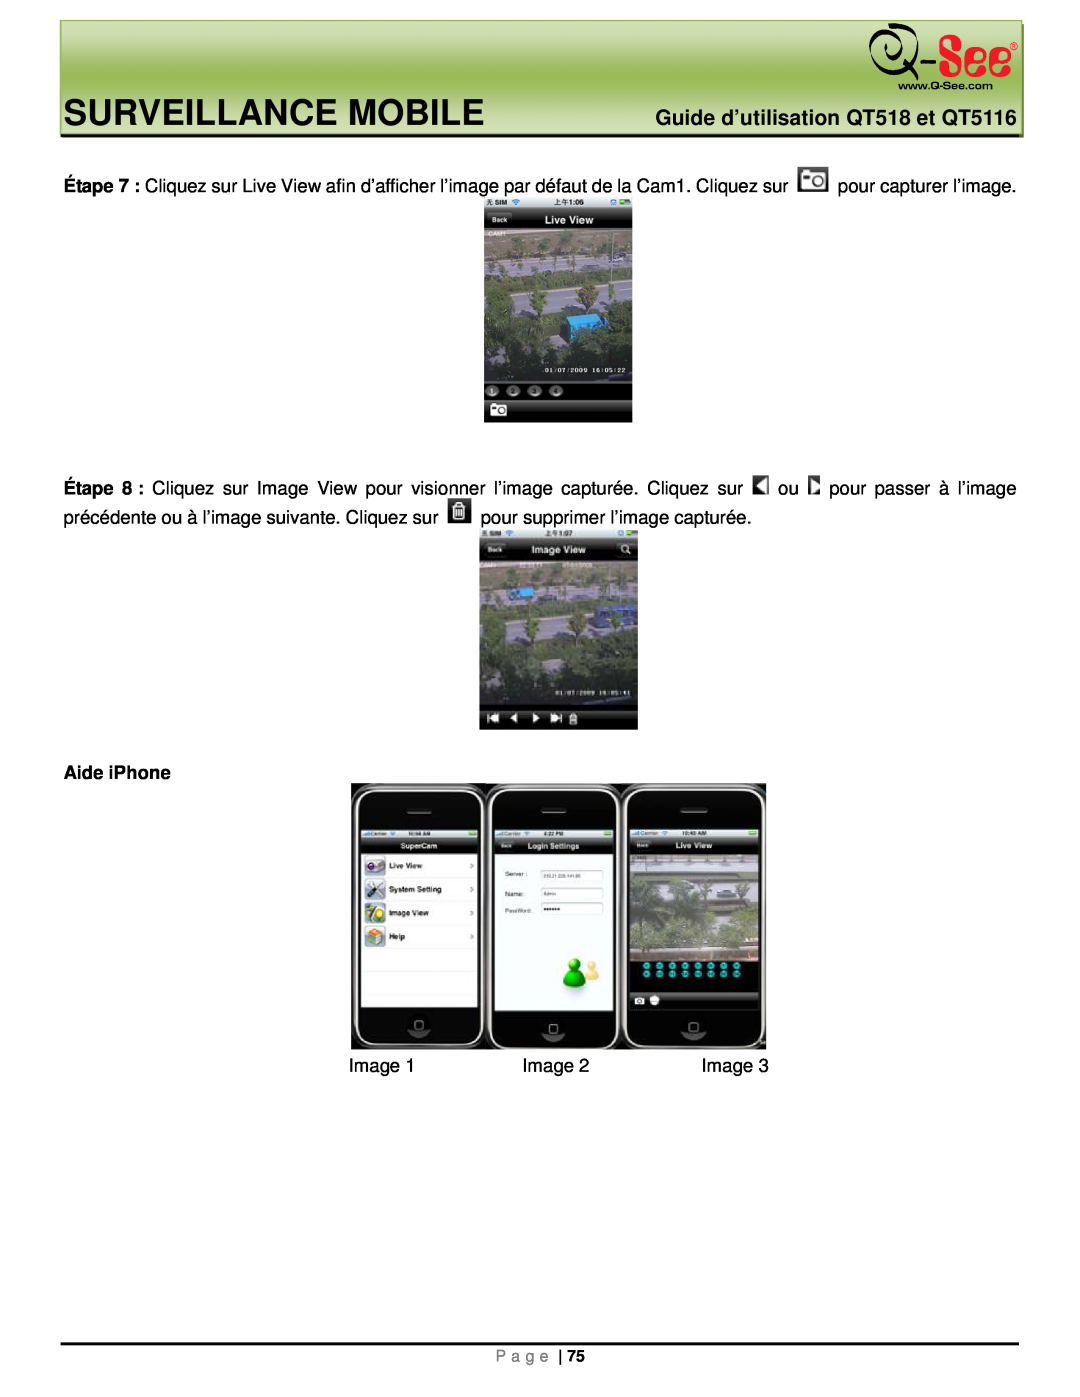 Q-See manual Surveillance Mobile, Guide d’utilisation QT518 et QT5116, Aide iPhone, Image, P a g e 